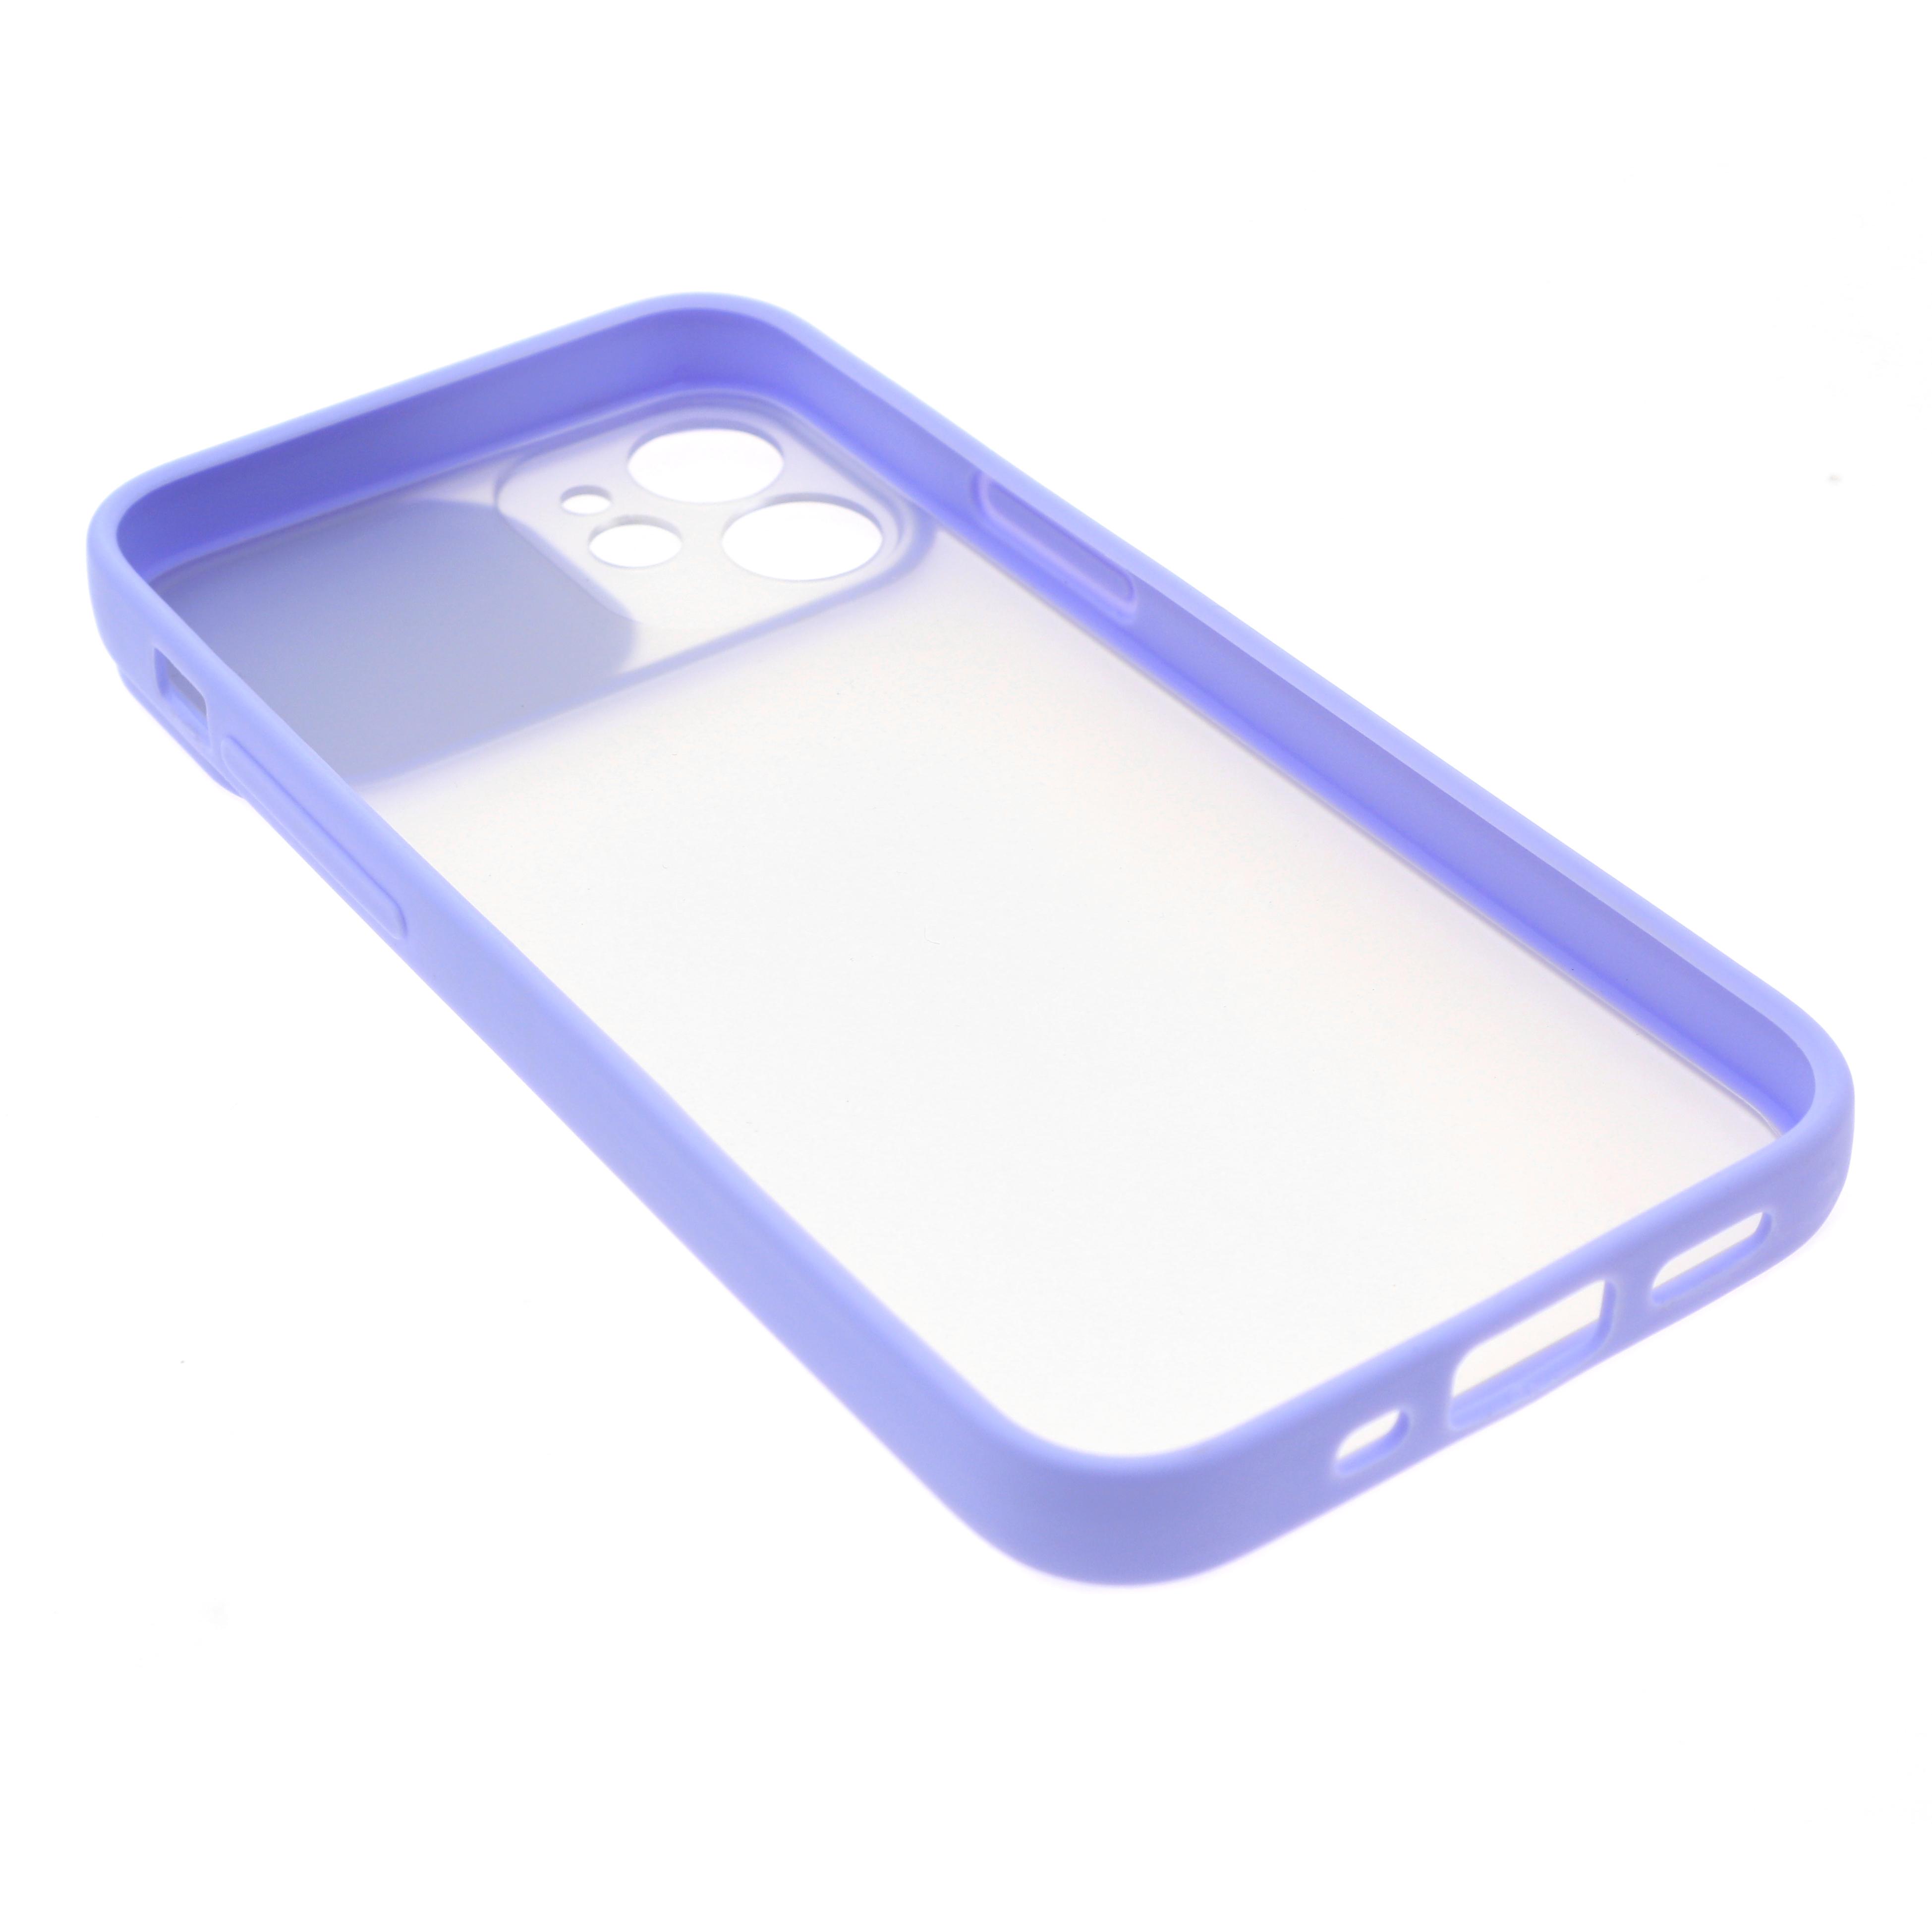 Силиконовый чехол для iPhone 12 mini со шторкой защищающей камеру CG Purple